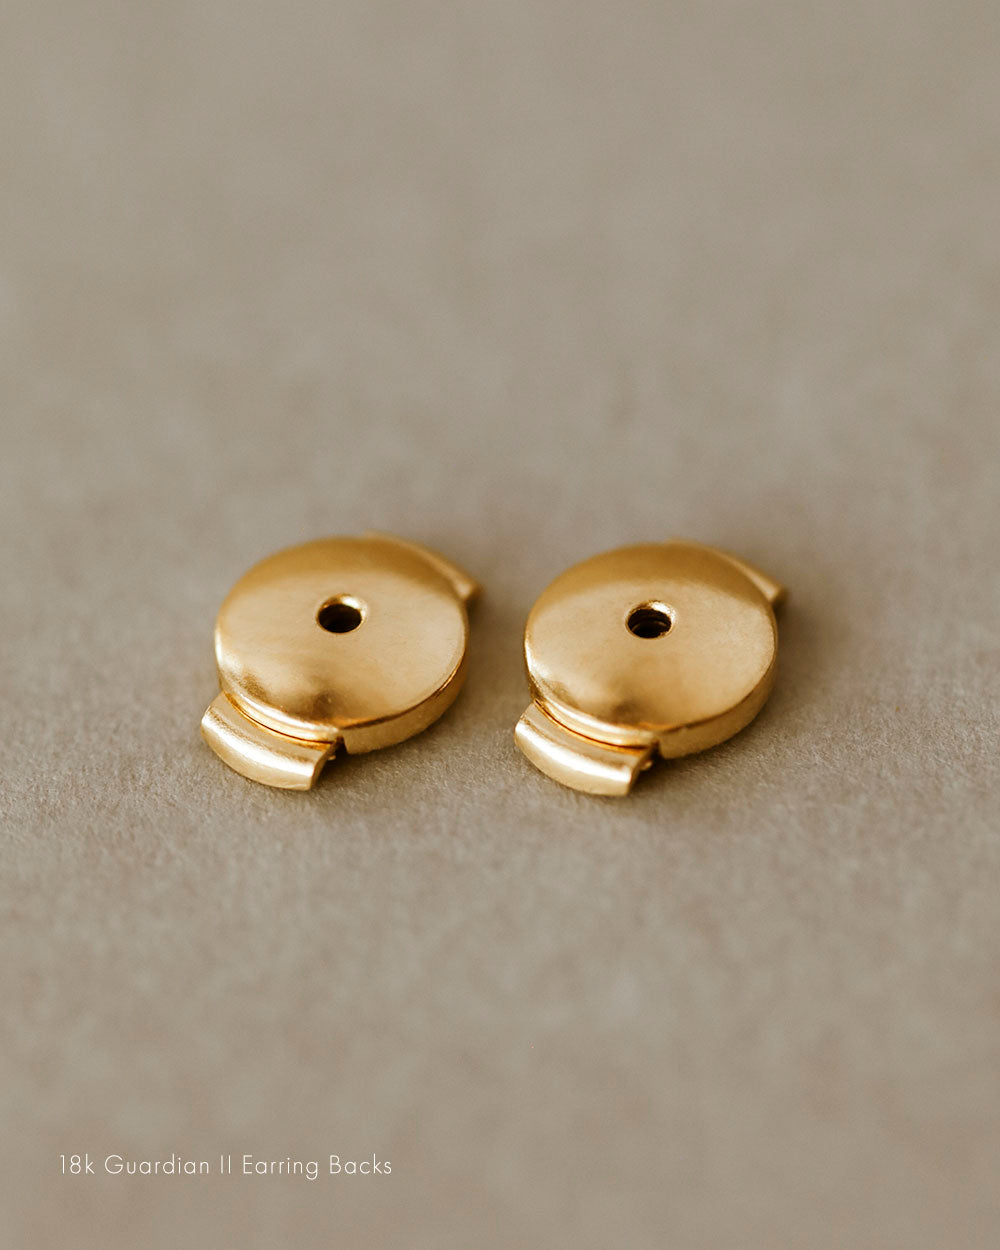 18k guardian II earrings backs studs george rings